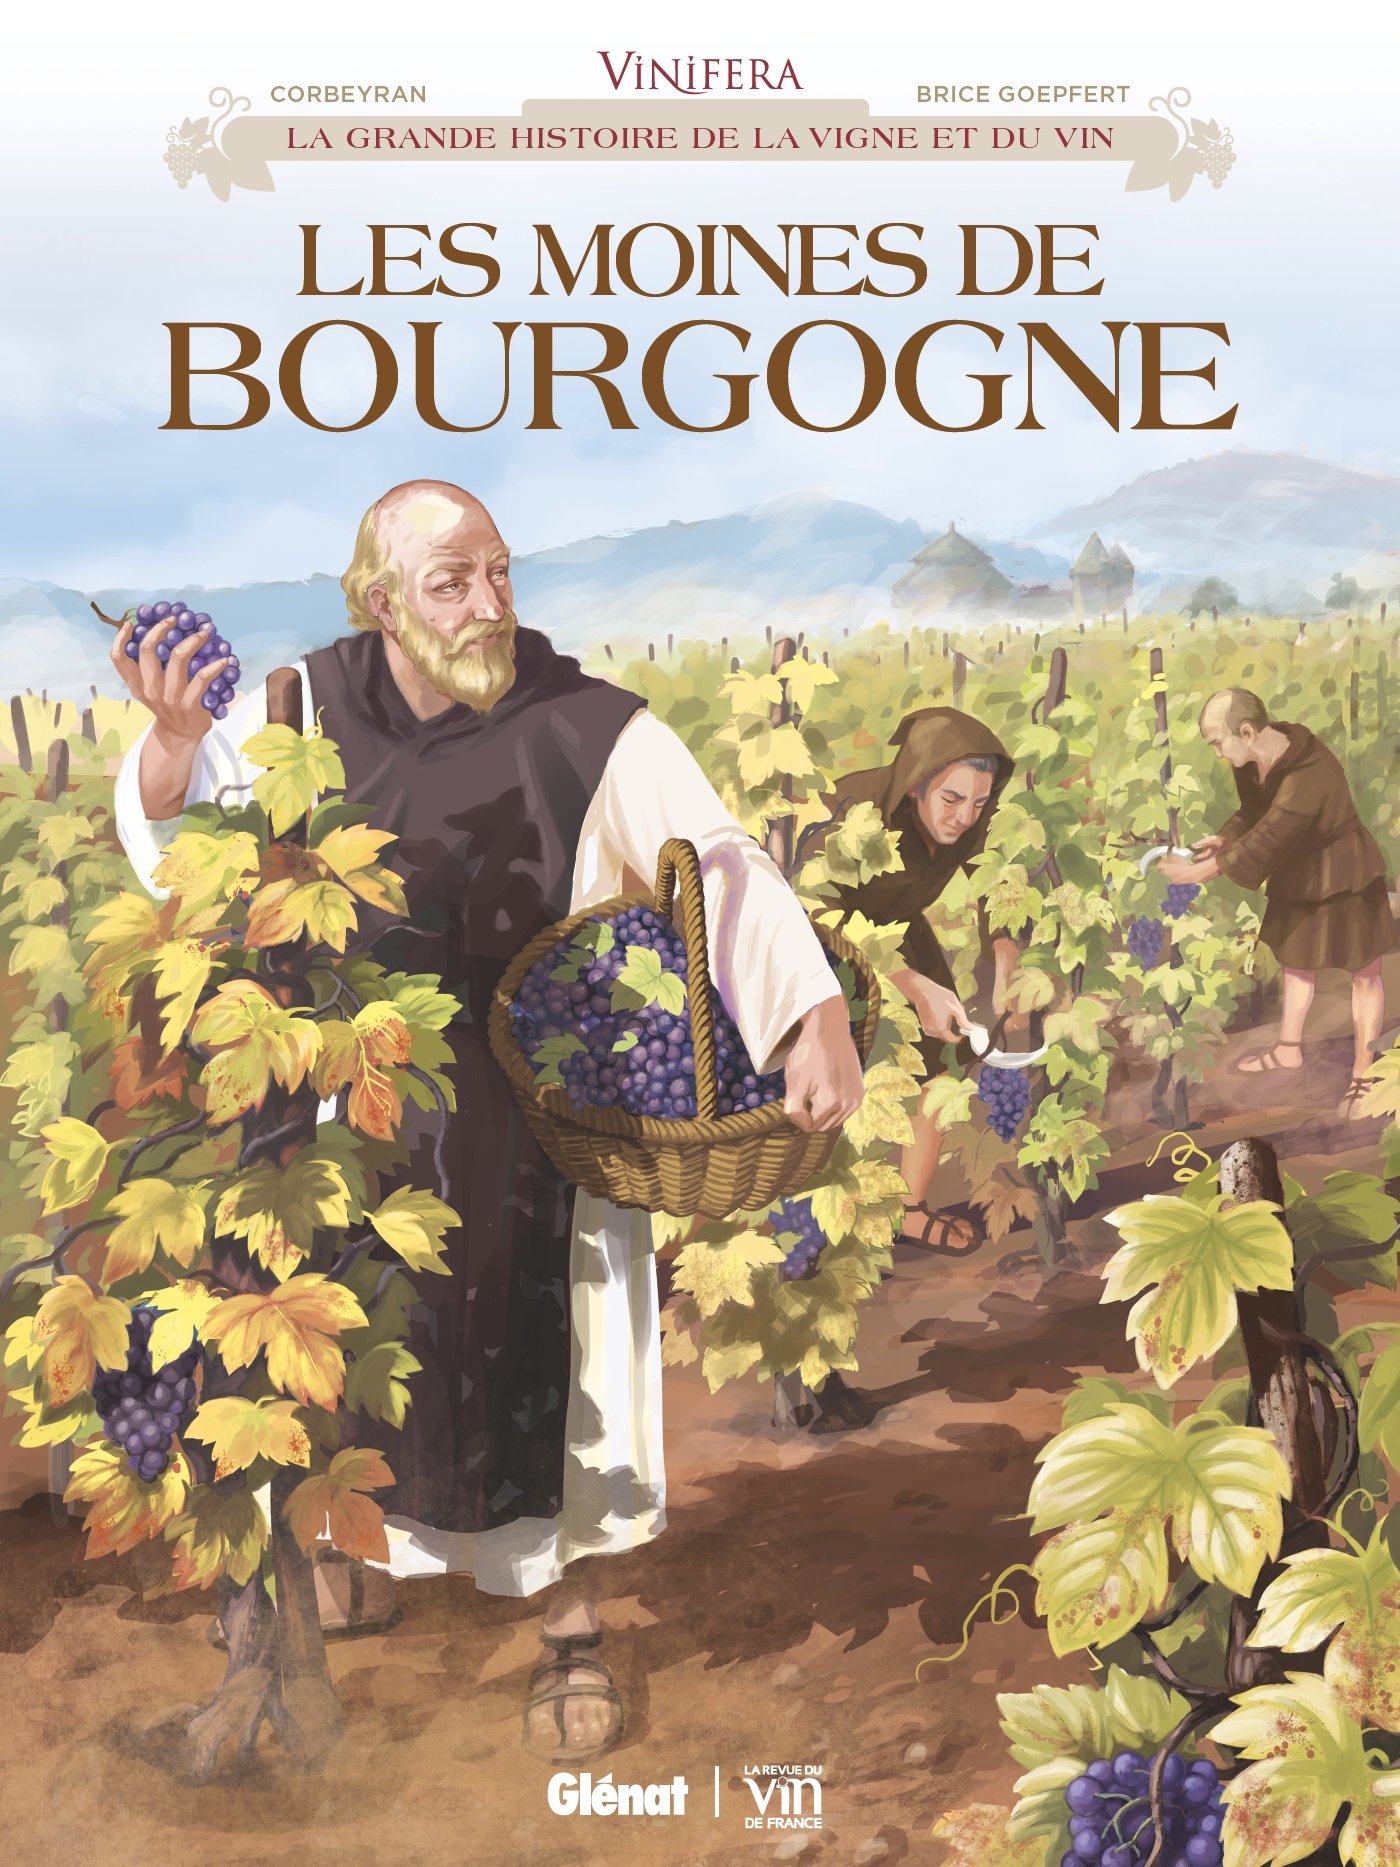 Les Moines de Bourgogne, (Coll. Vinifera), 2018, 56 p. BANDE DESSINÉE